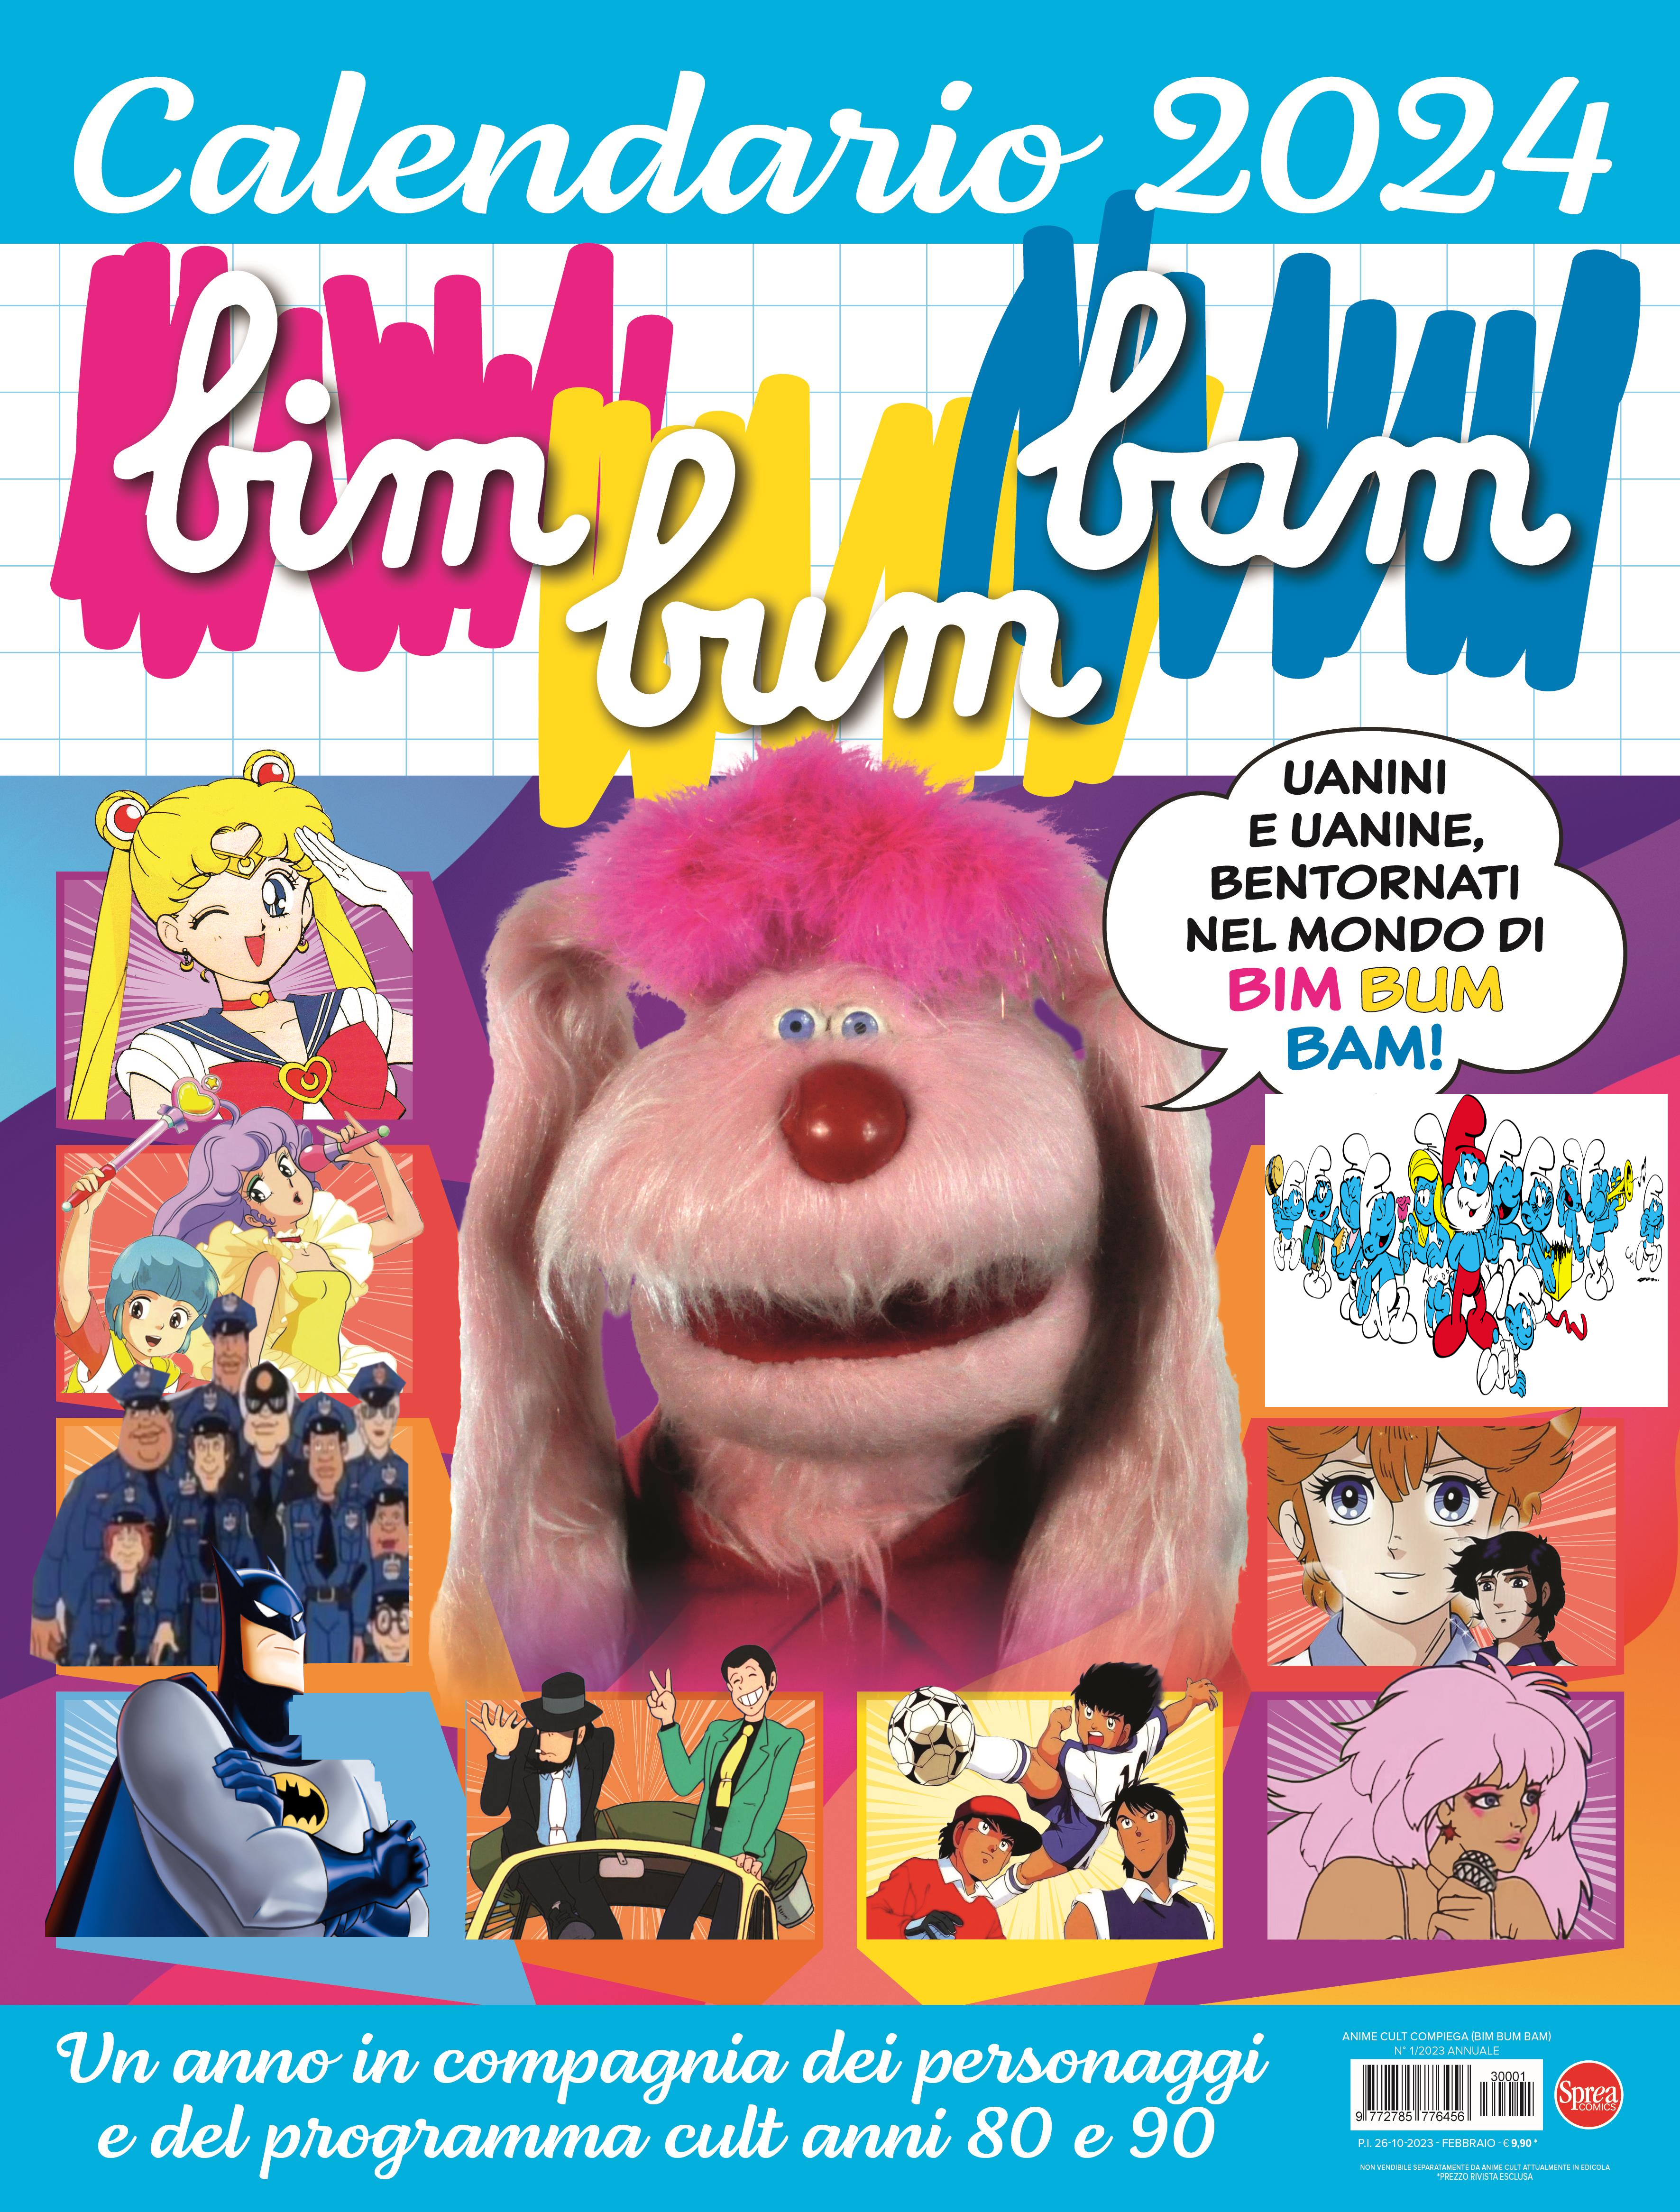 Calendario Bim Bum Bam 2024 da Sprea Comics by EmmanuelDup on